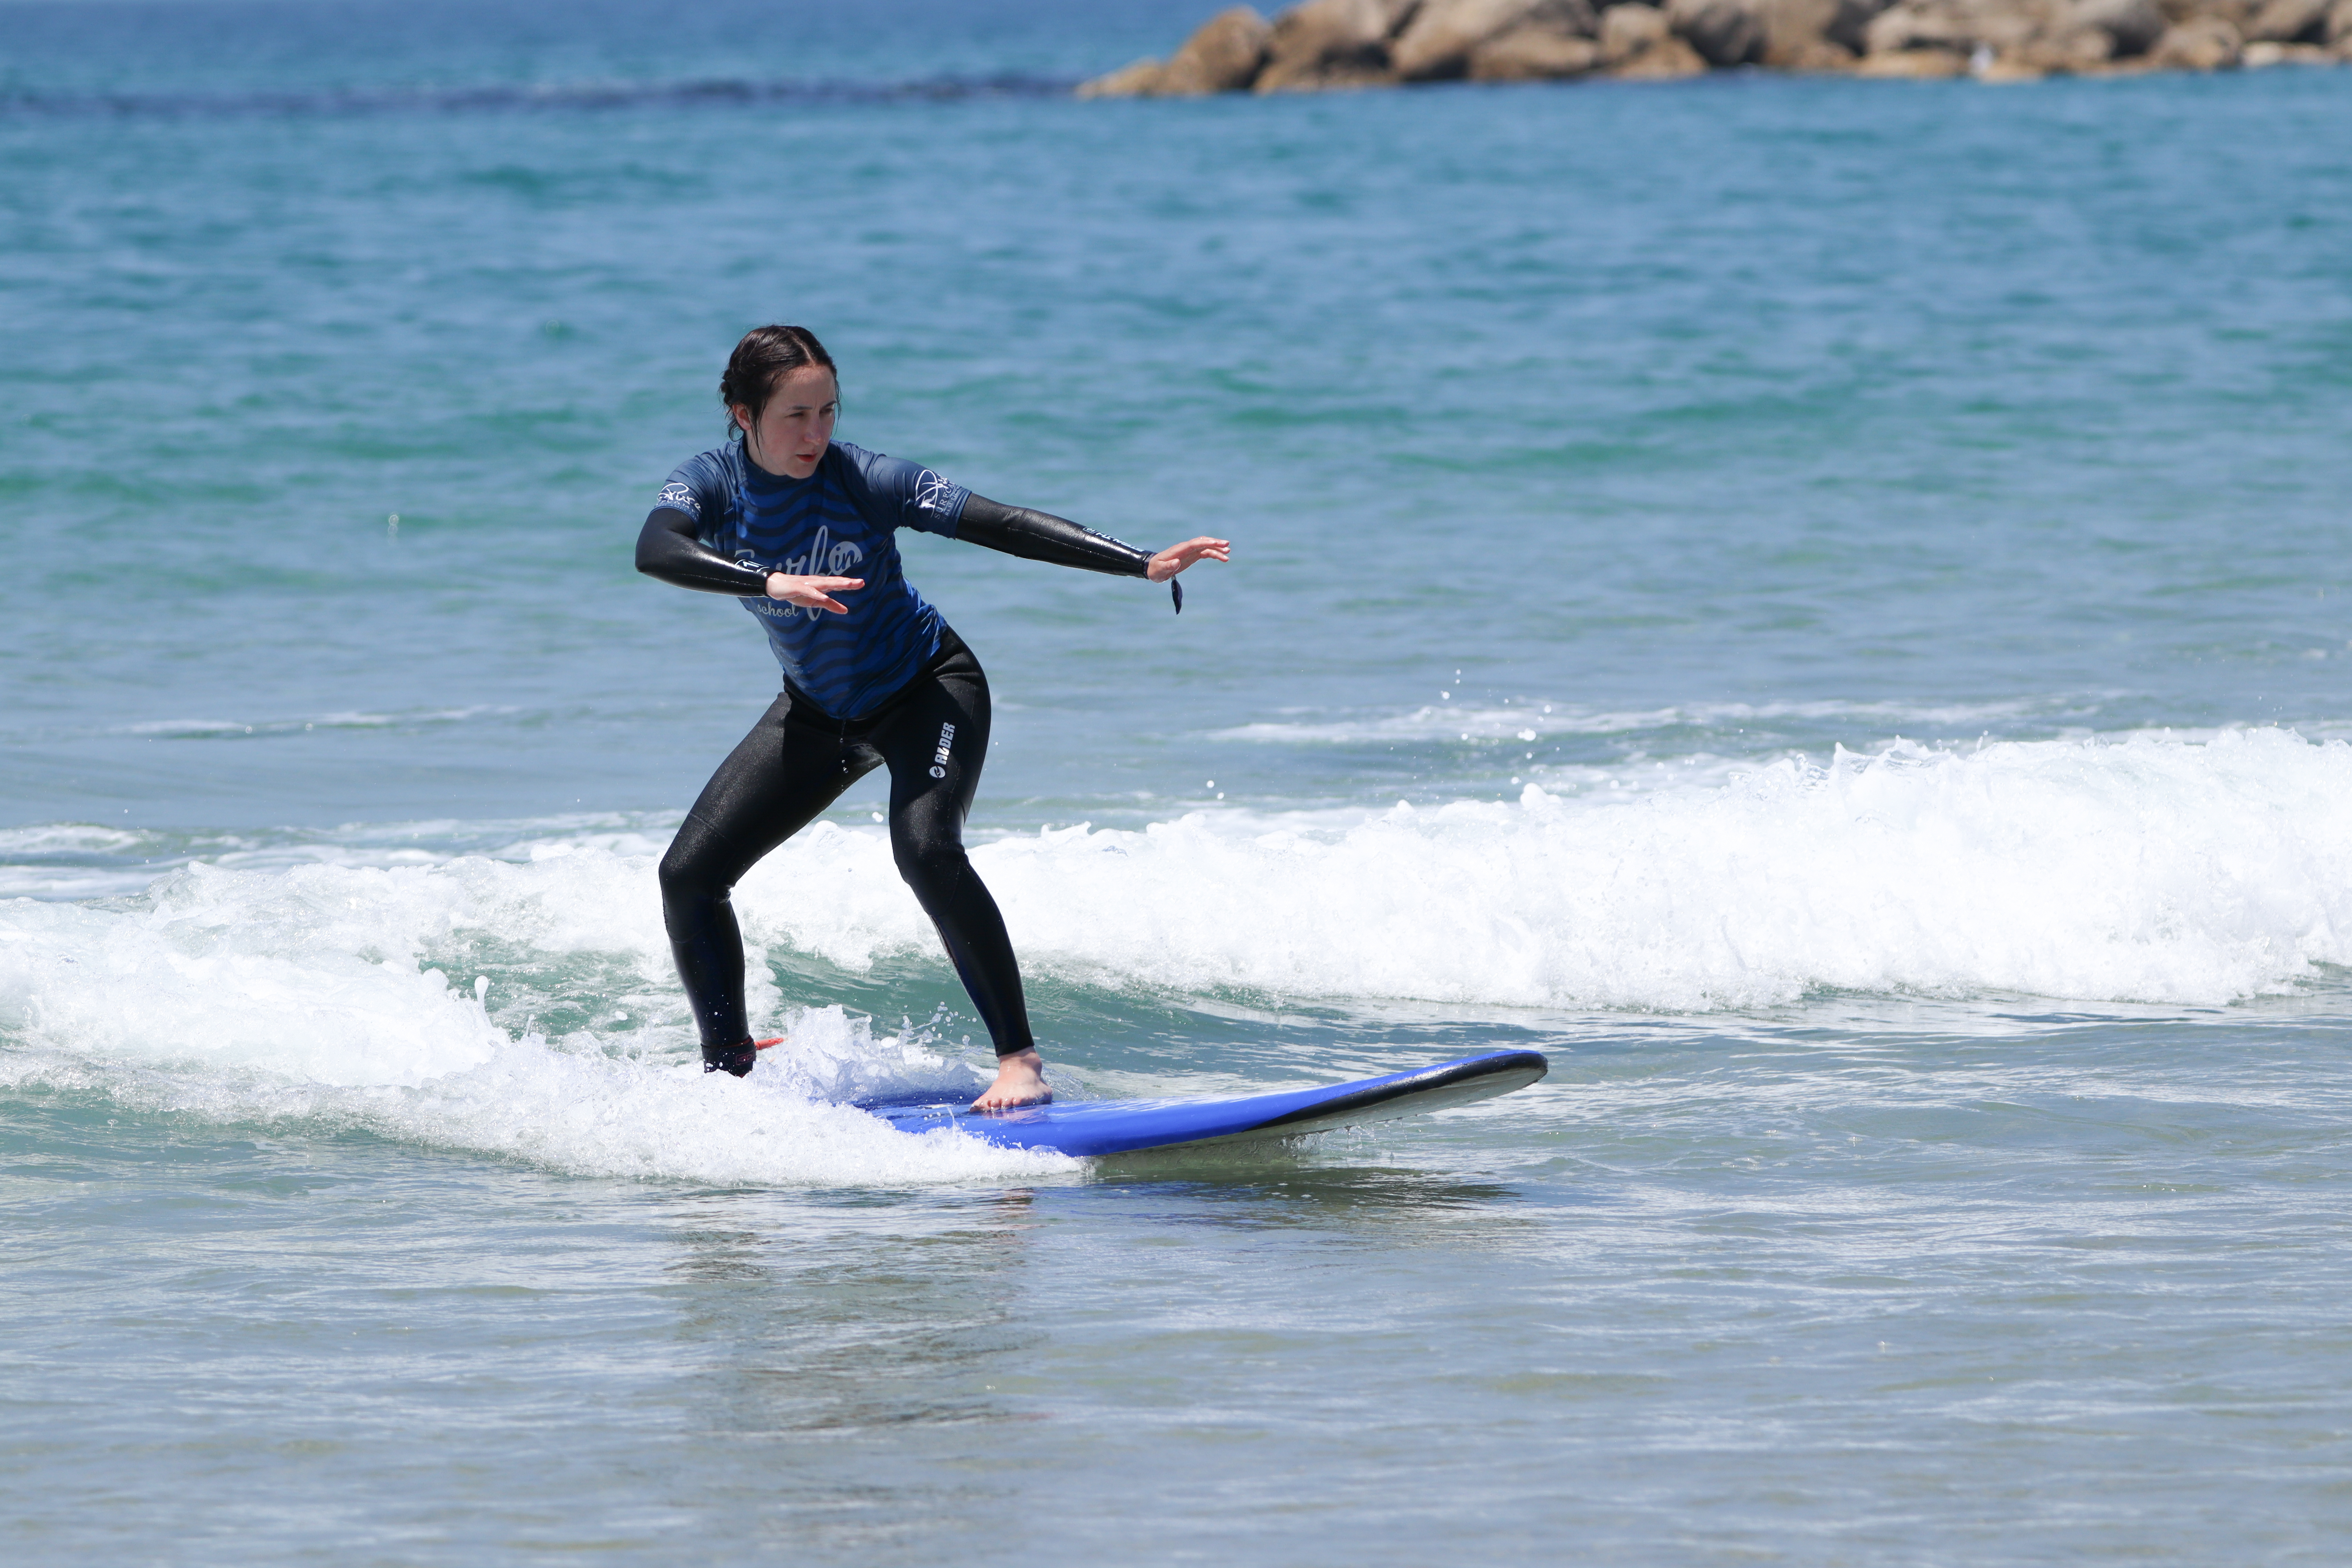 Wyjazdy surfingowe za granicę - surf camps w Portugalii i Maroko